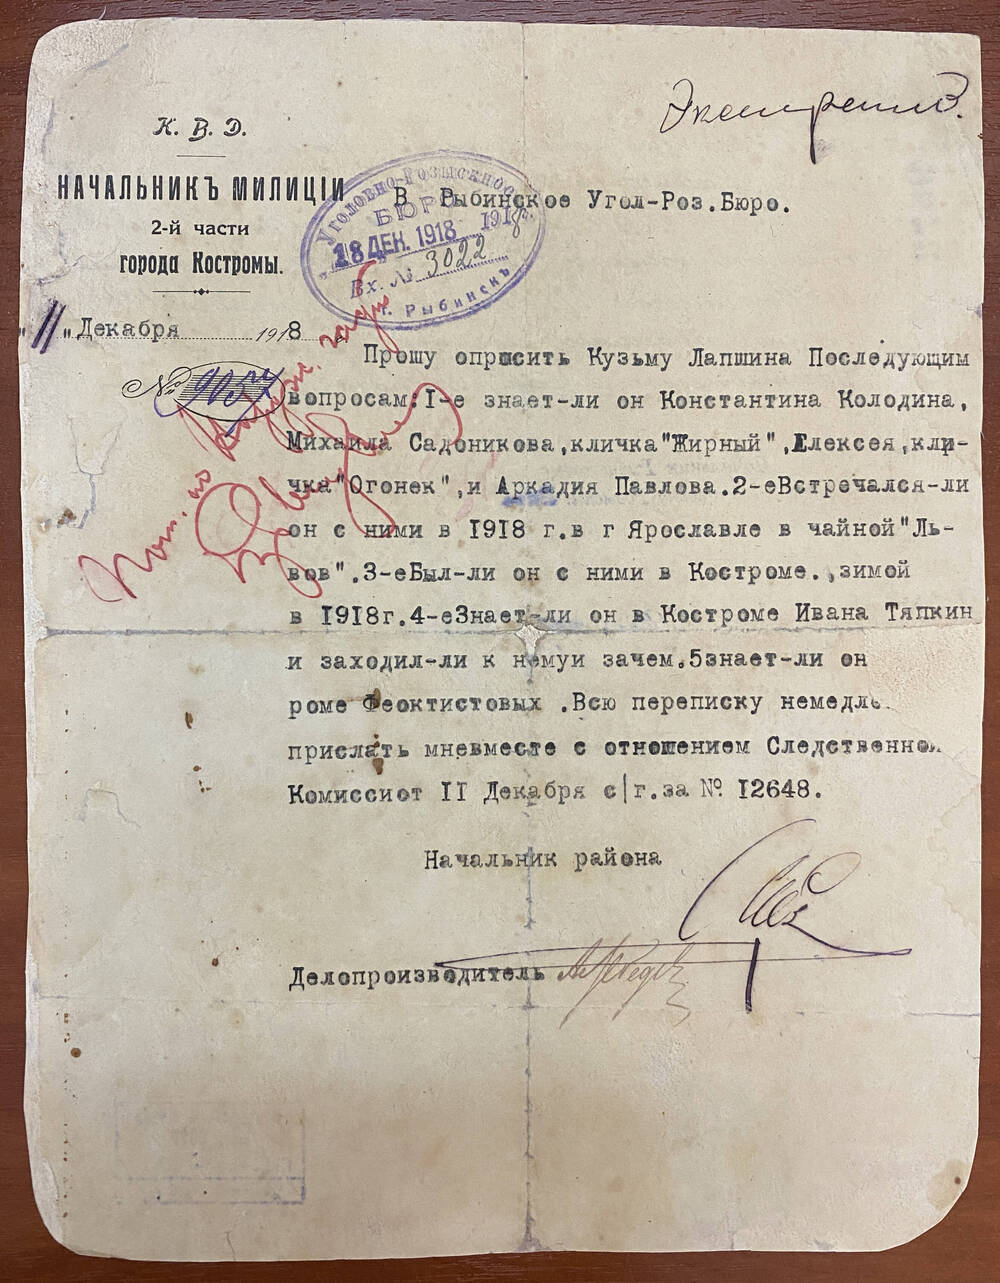 Письмо № 9057 от 11.12.1918 г. в Рыбинское Угол-Роз. Бюро с просьбой опросить Кузьму Ланшина. Две подписи. Резолюция на письме